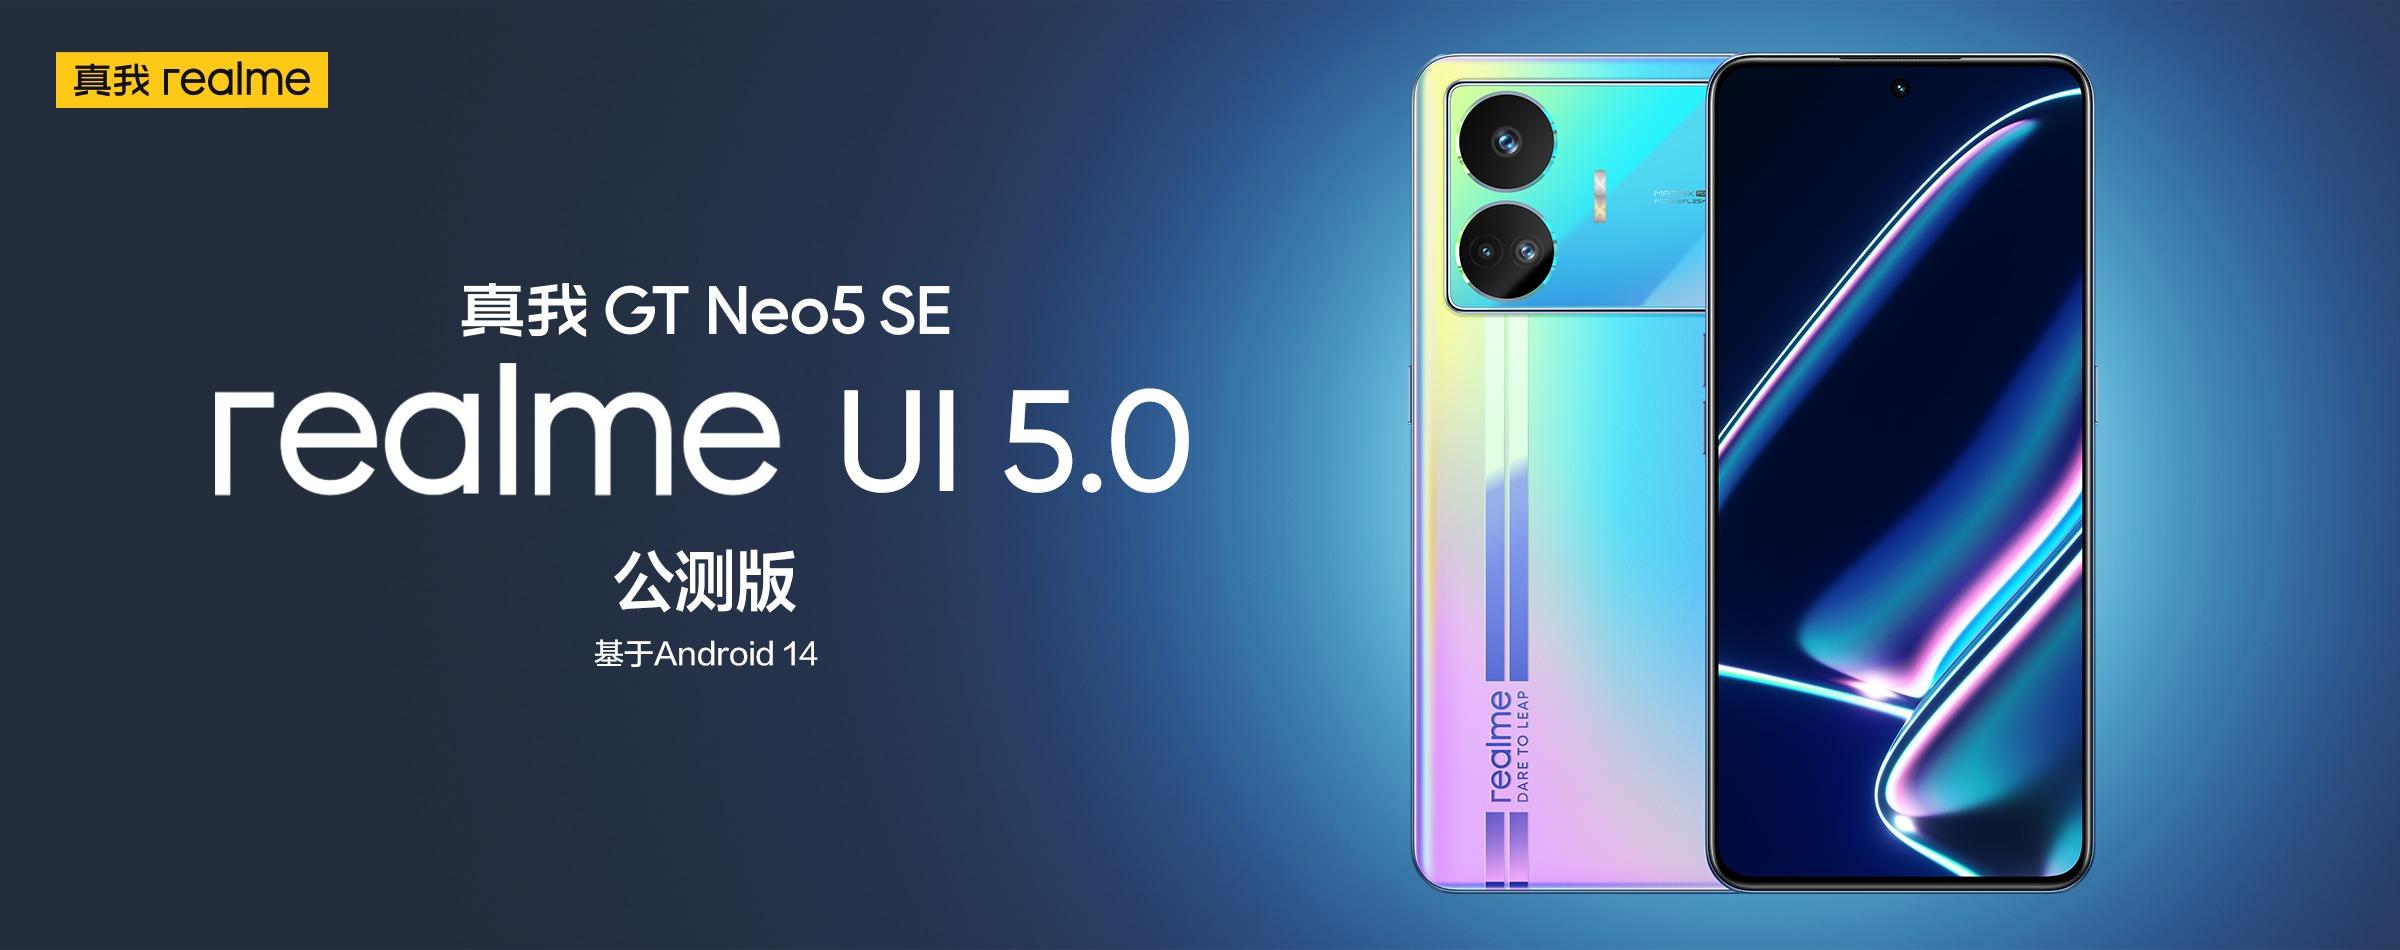 realme GT Neo 5 SE otrzymał wersję beta realme UI 5.0 opartą na systemie Android 14